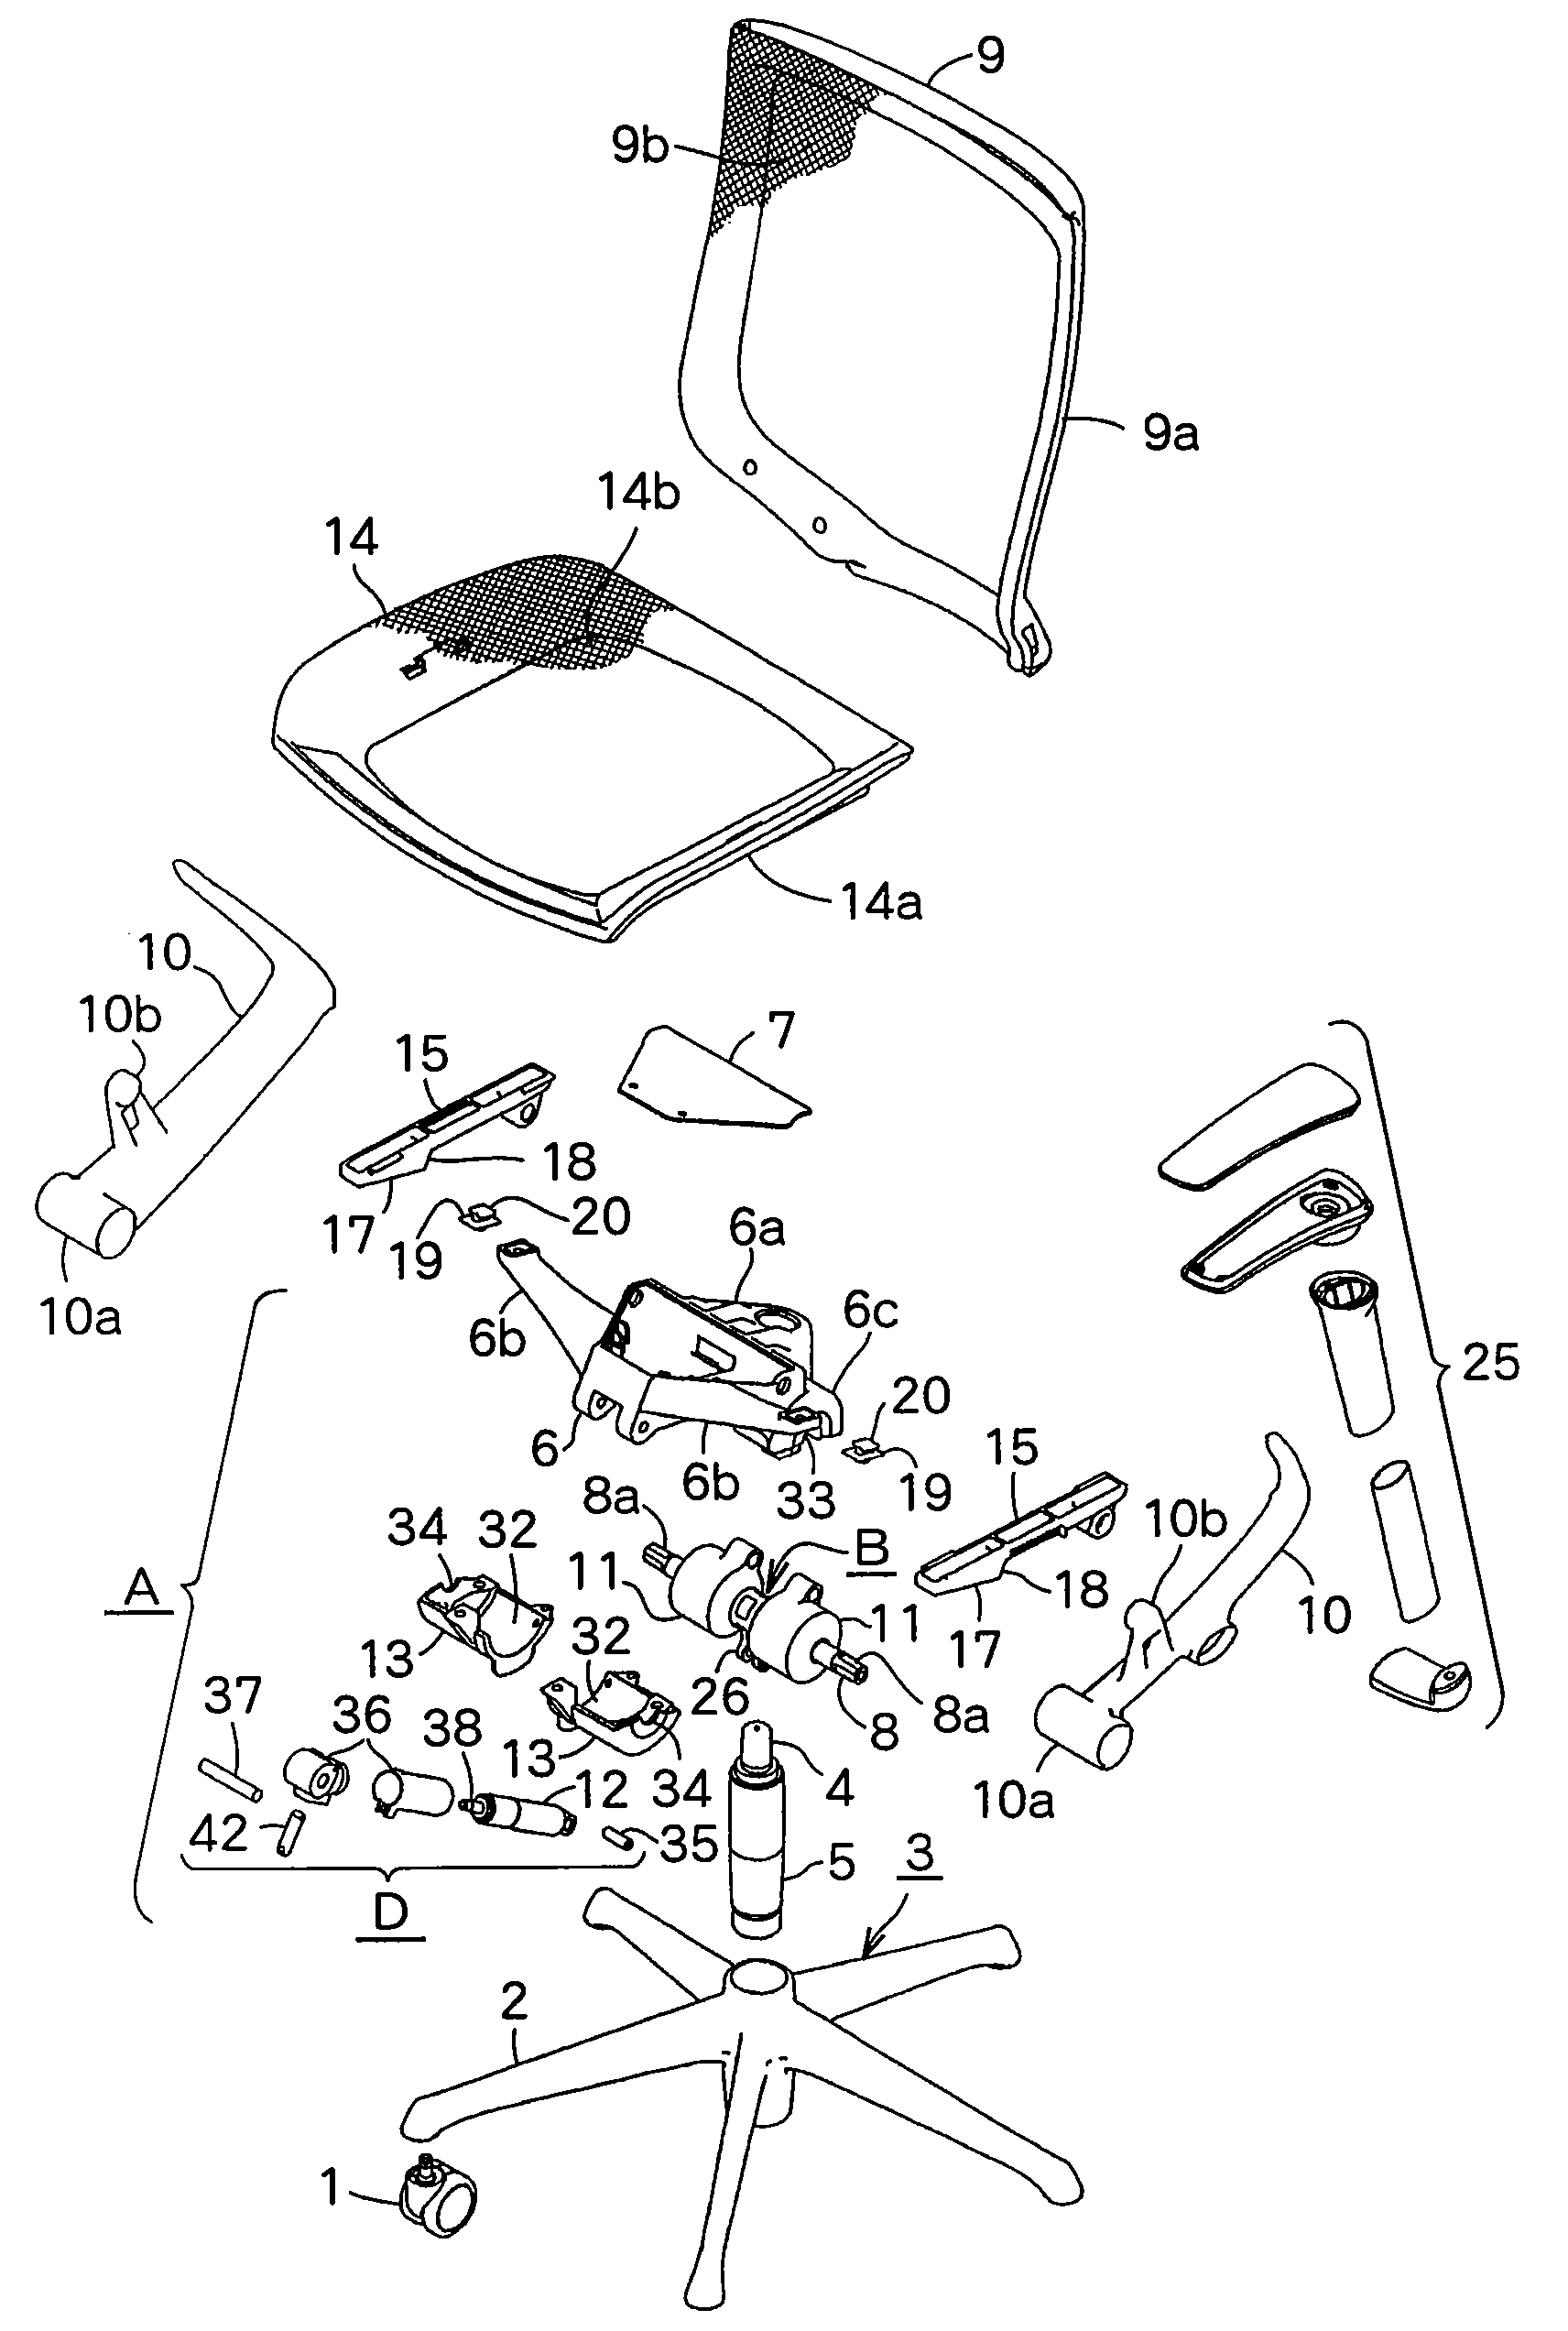 Backrest-tilting device